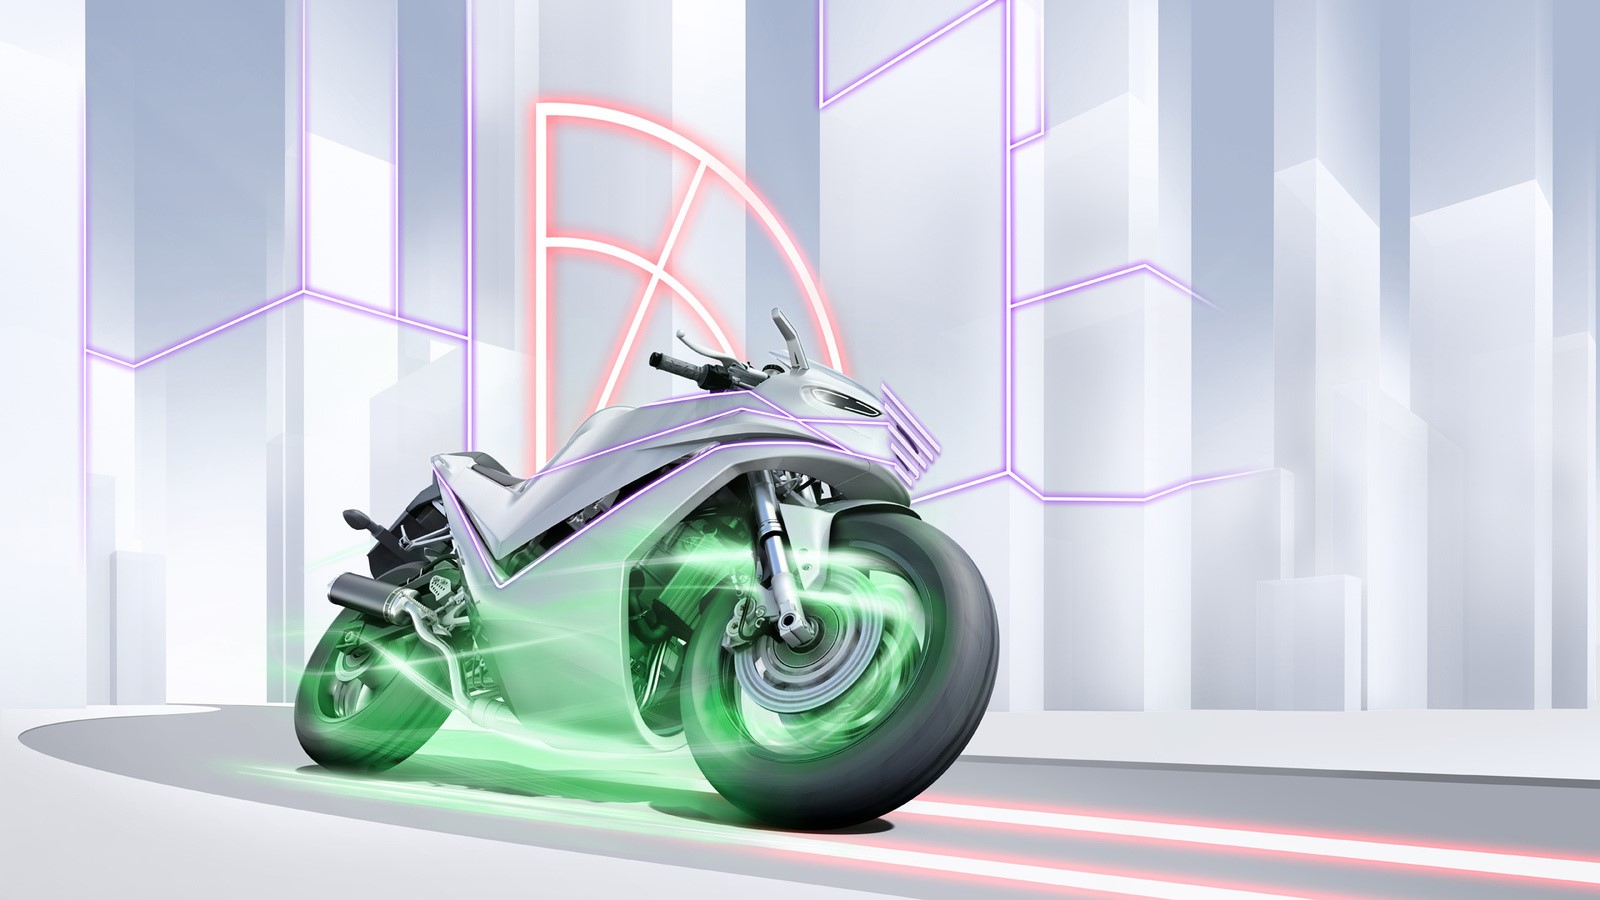 Sécurité accrue pour les deux-roues : innovations Bosch pour la moto du futur